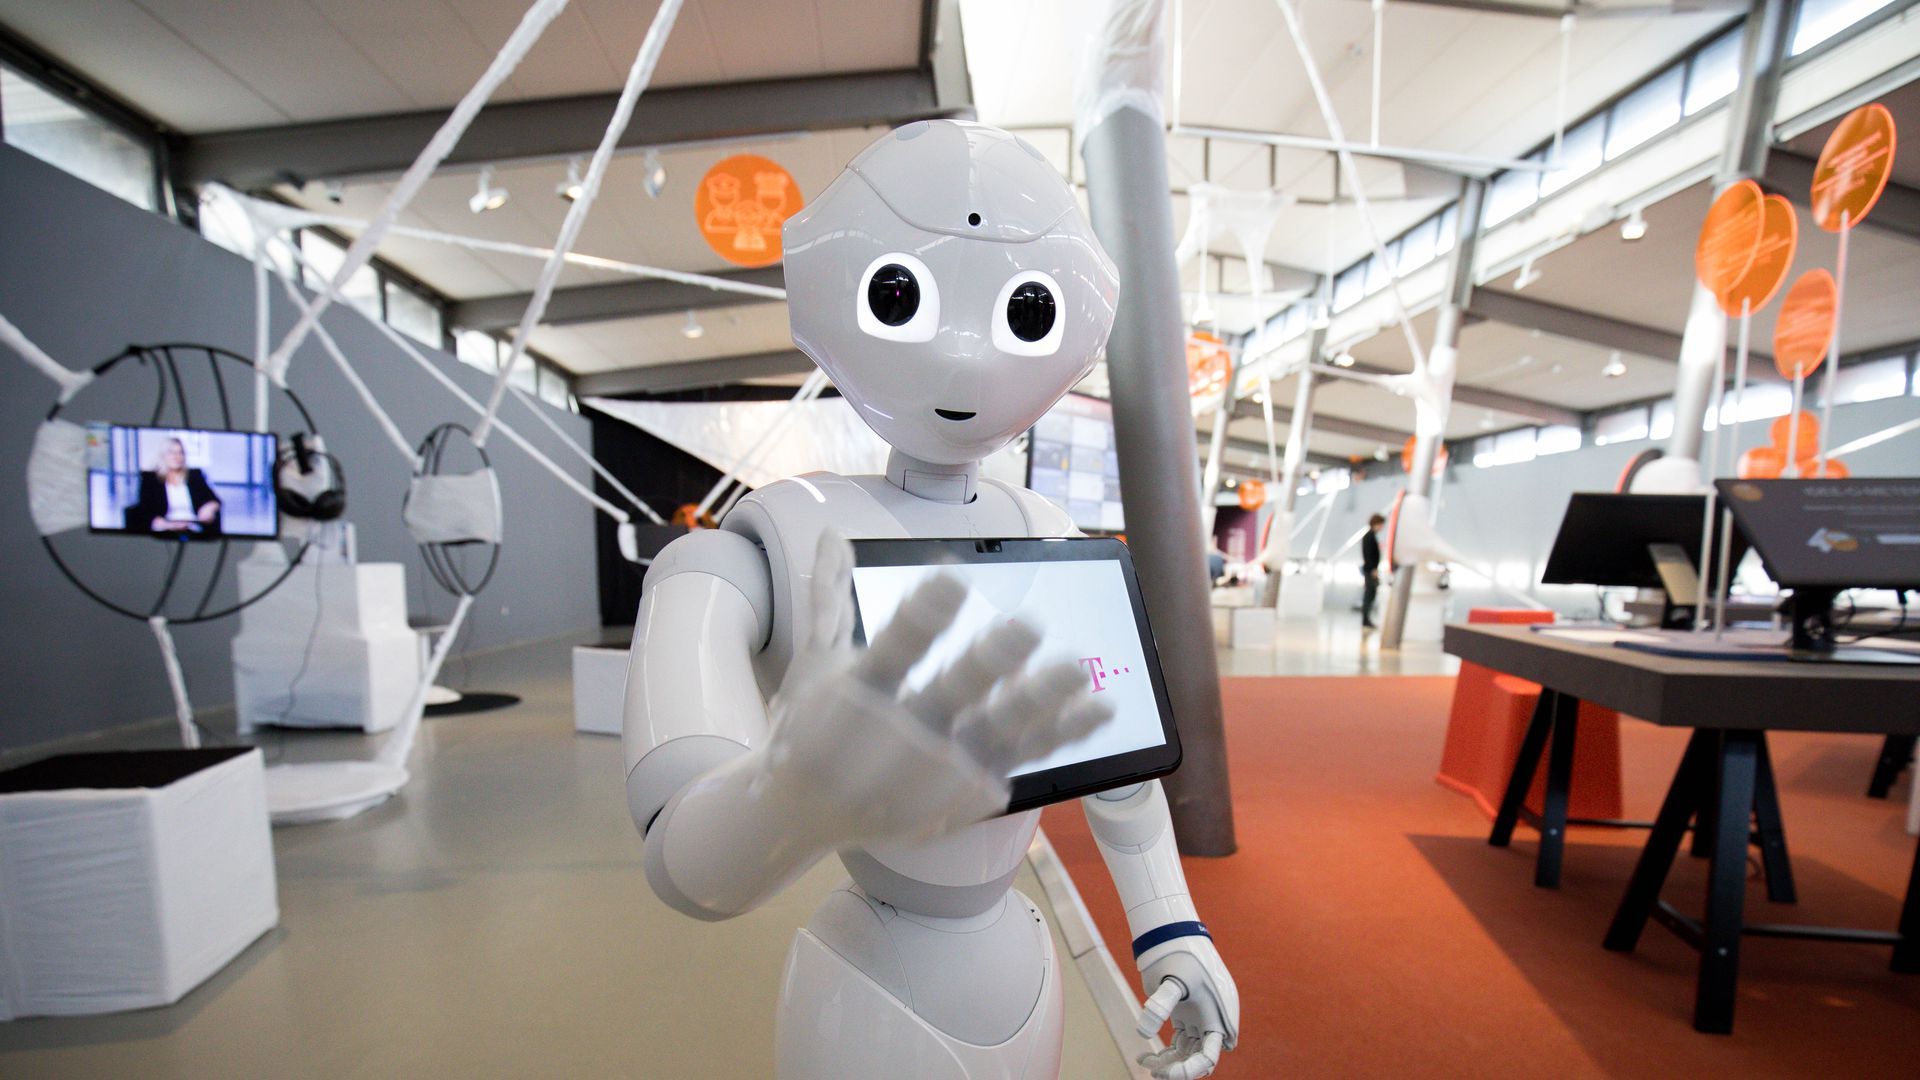 A humanoid robot gestures toward the camera.